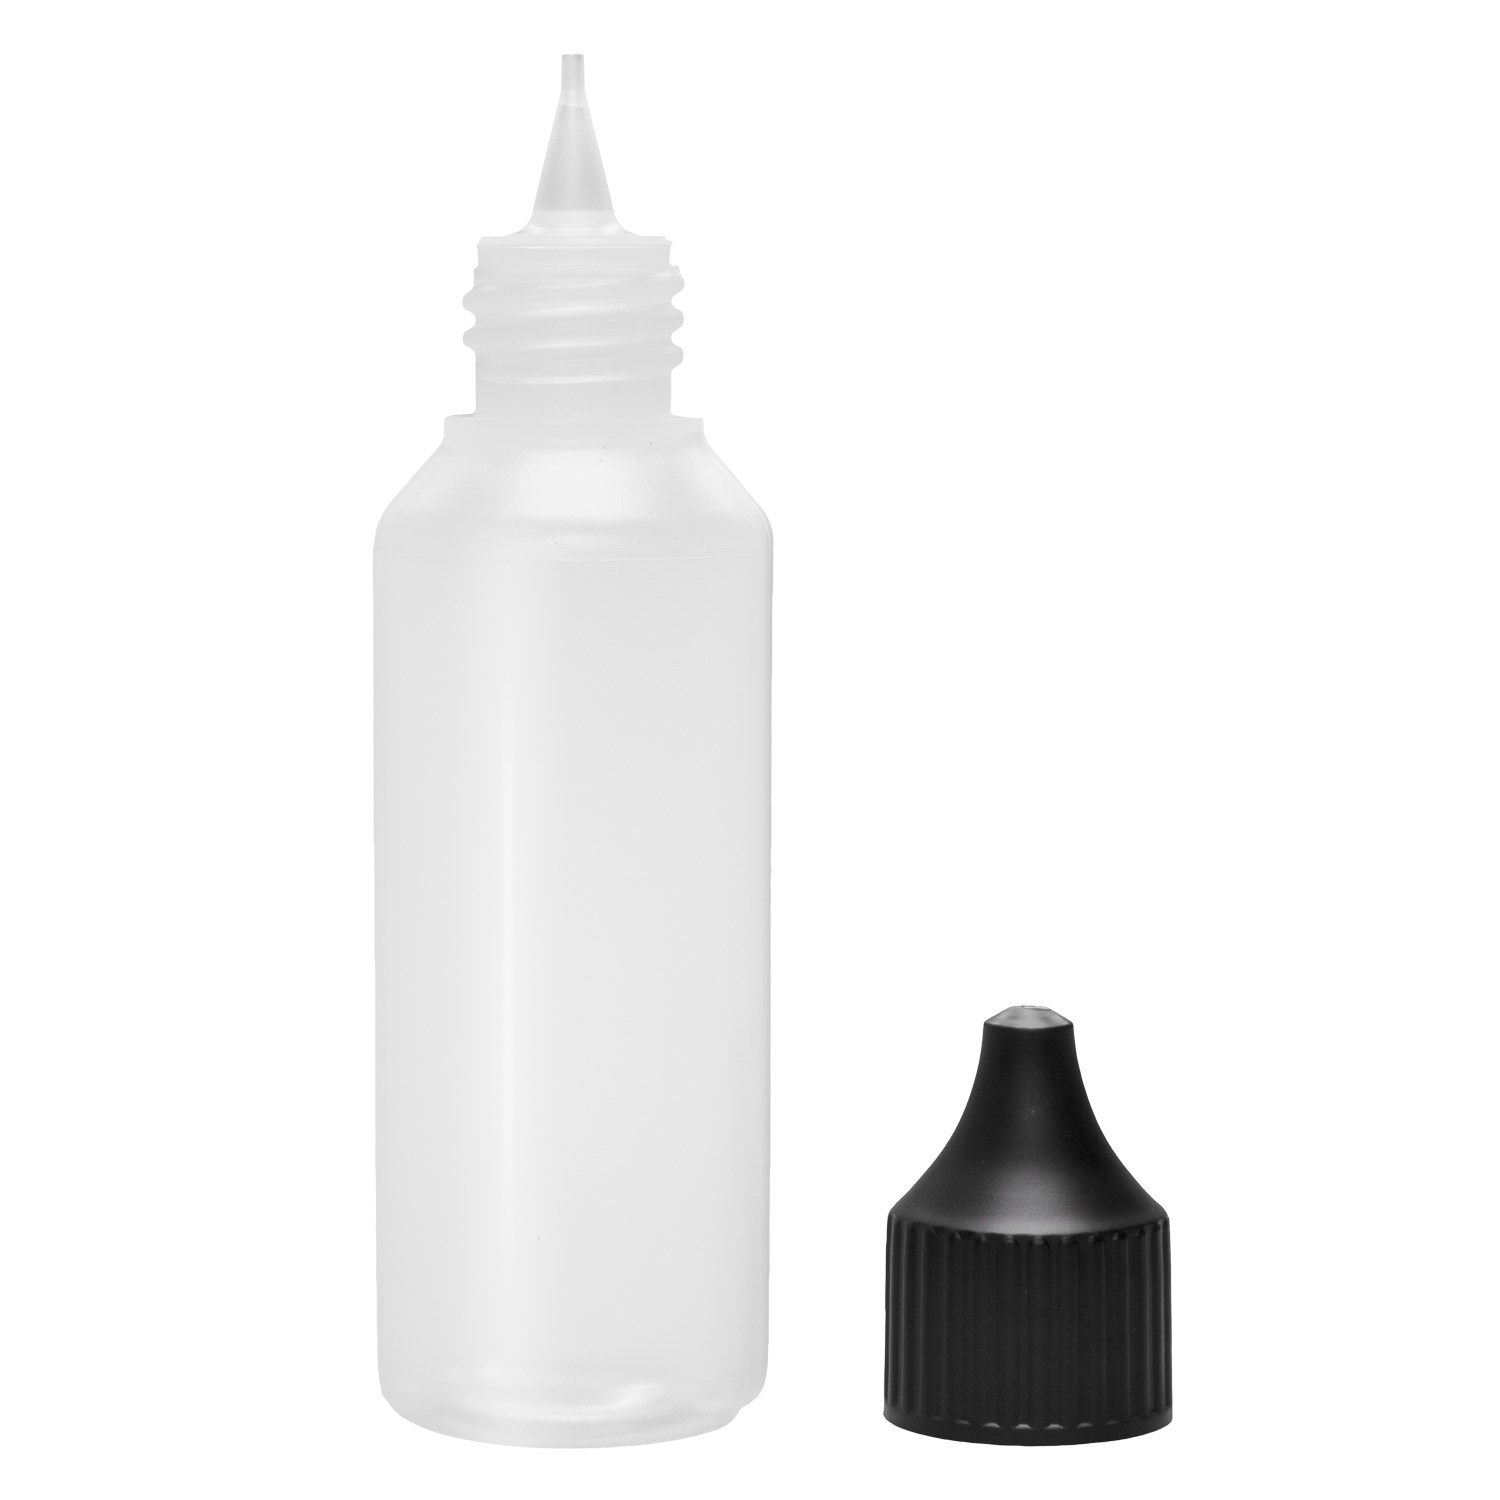 Liquidflasche Kunststoff 50ml